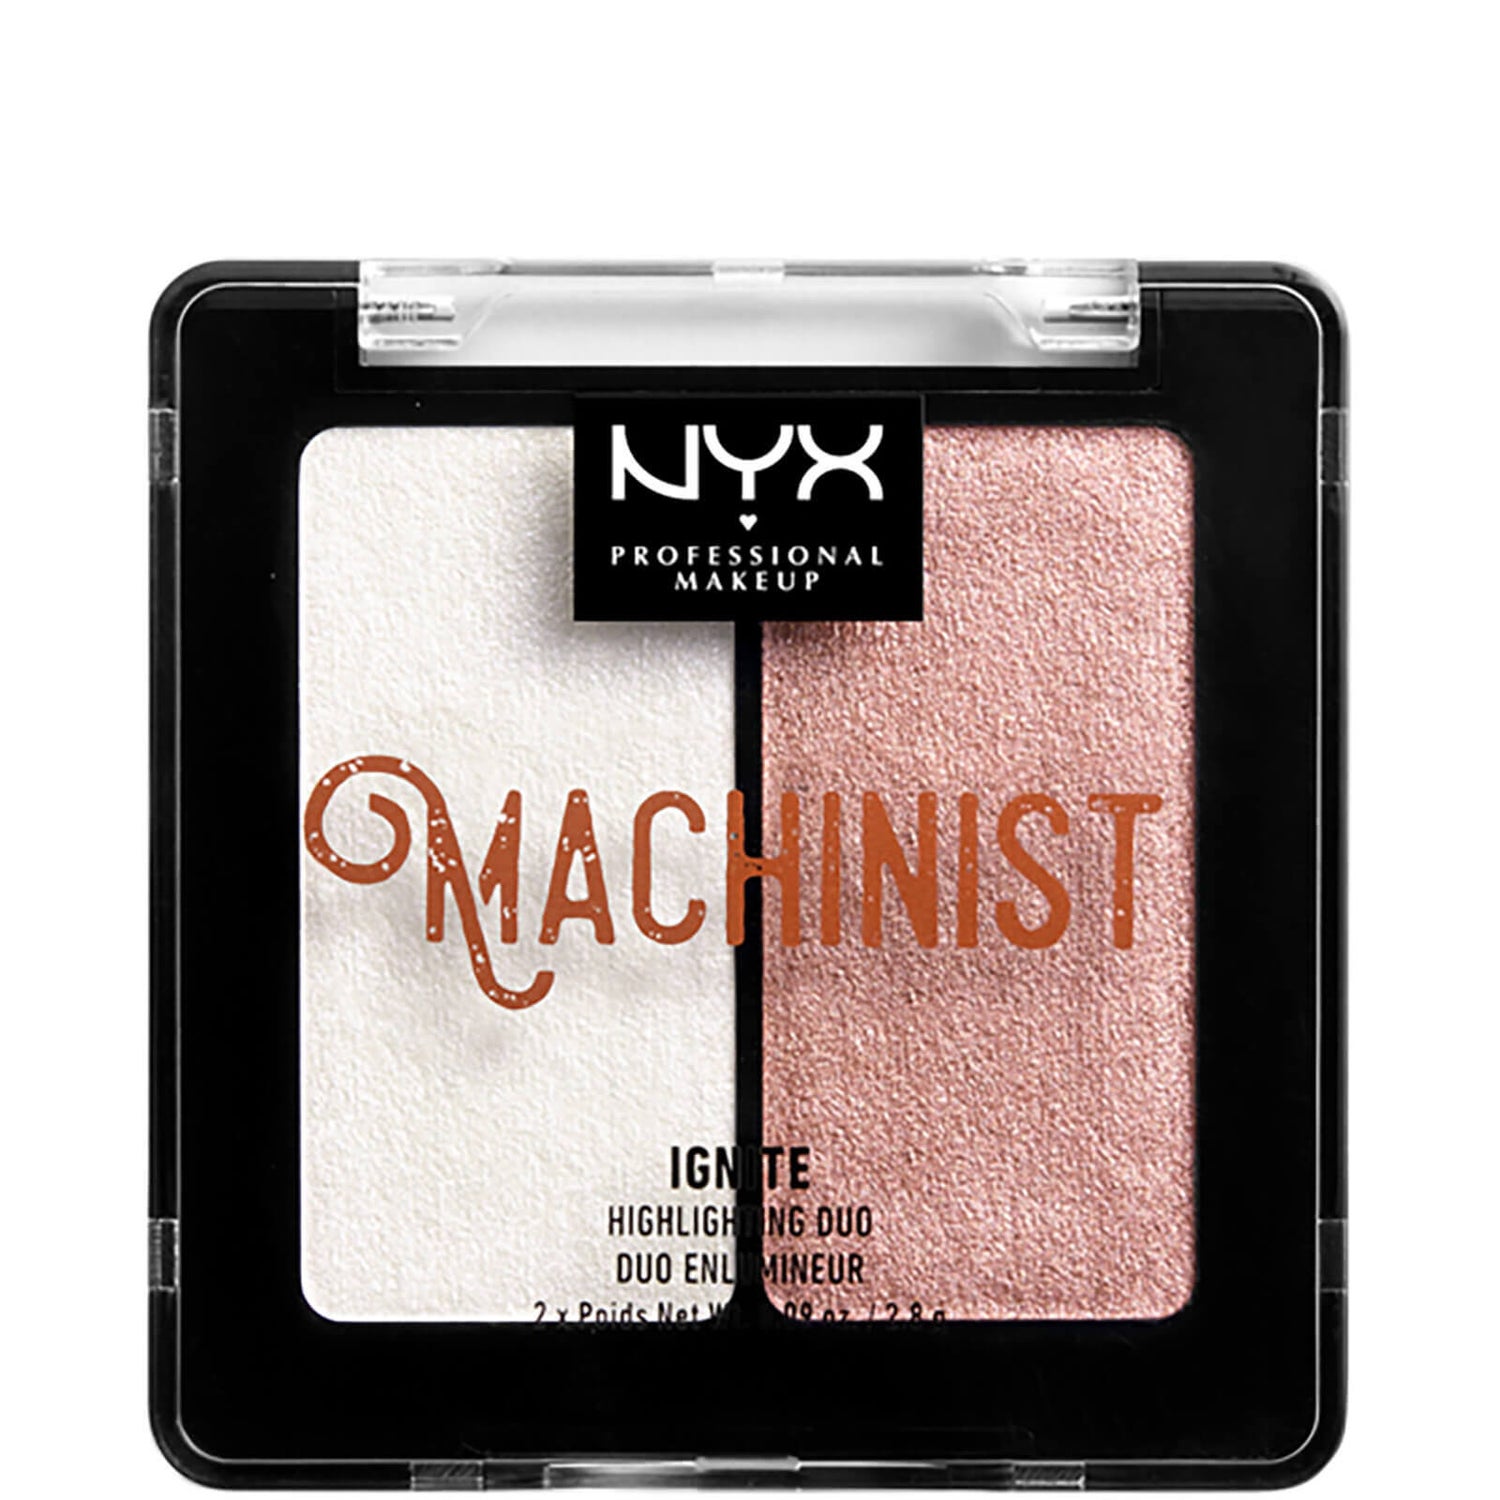 NYX Professional Makeup Machinist Highlighter Duo Kit podwójny rozświetlacz – Ignite